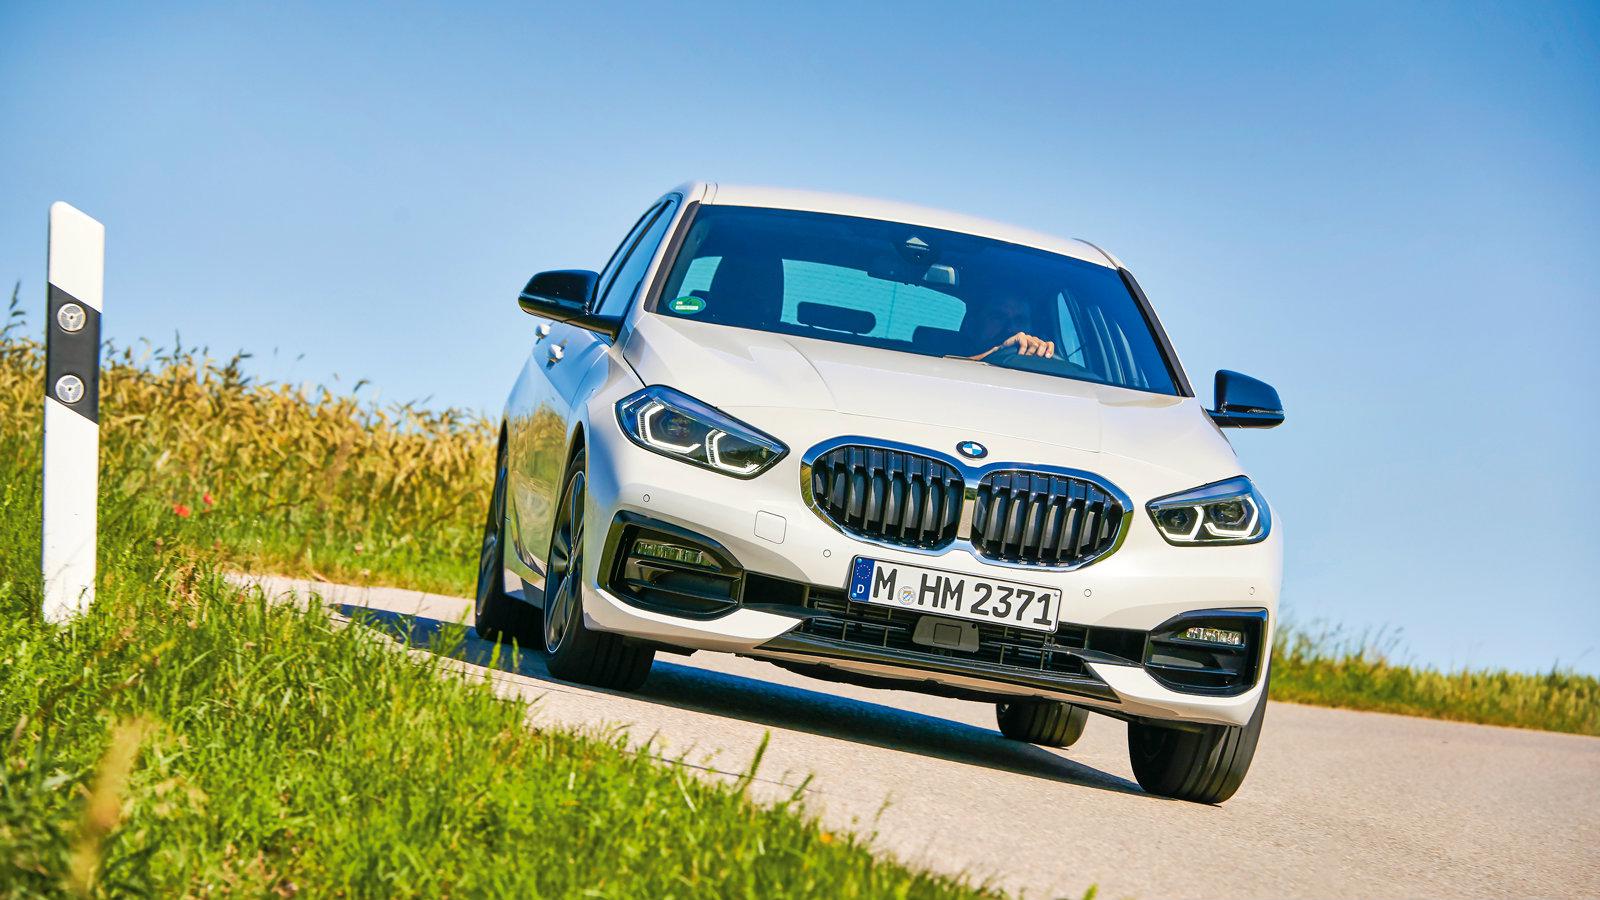 ΟΔΗΓΟΥΜΕ: Νέα BMW Σειρά 1